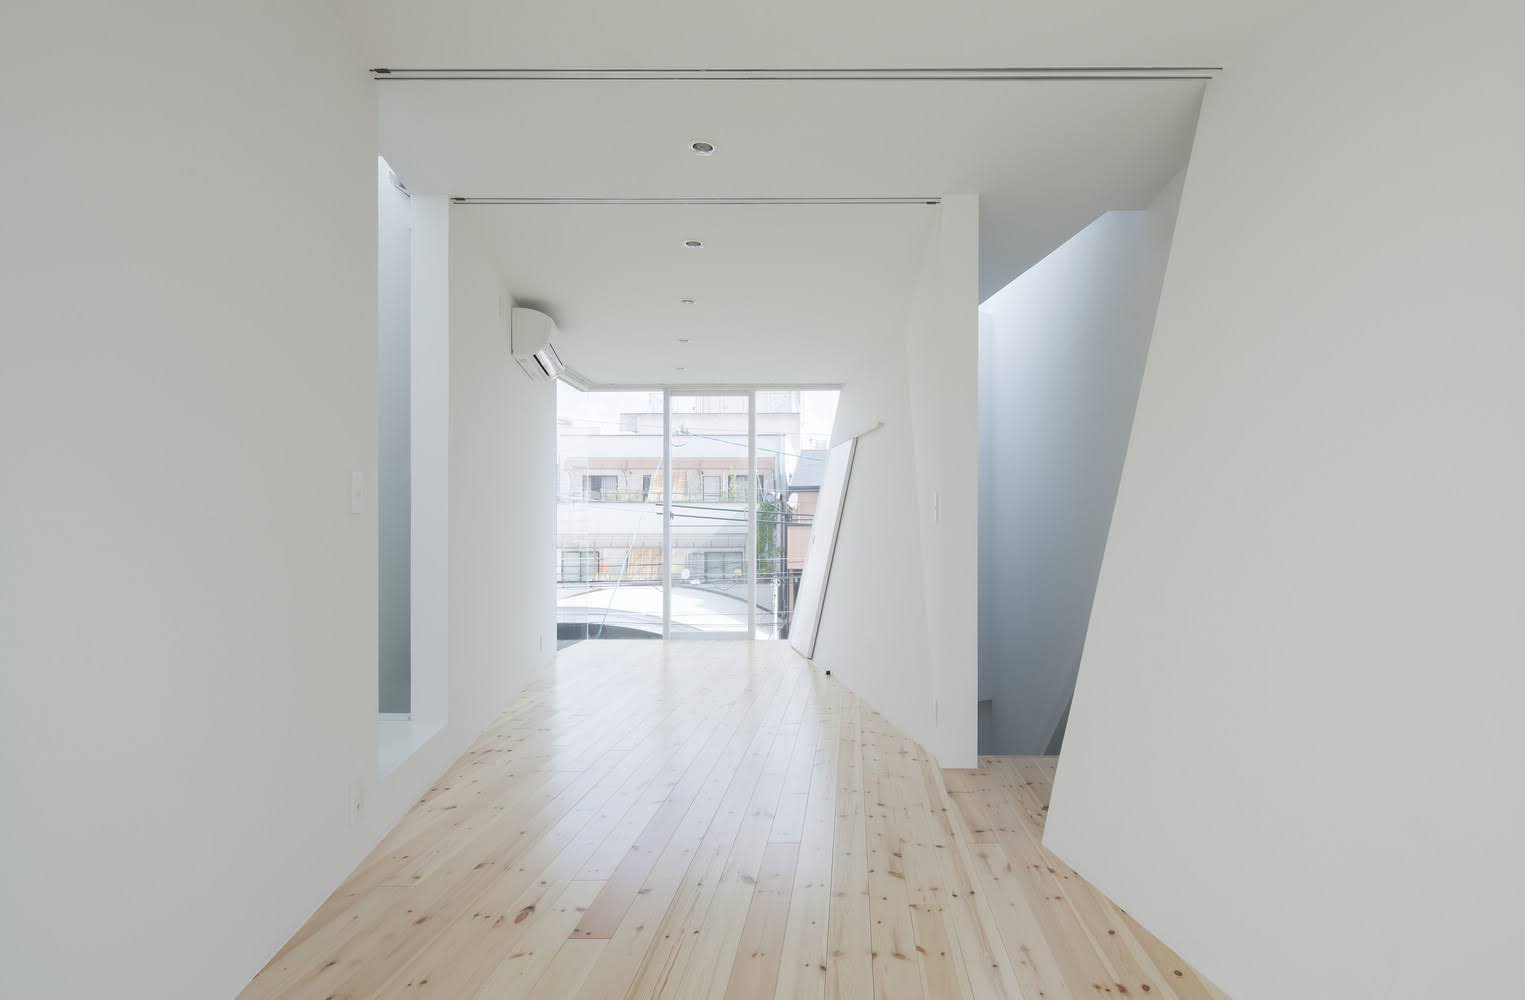 Casa en Tamatsu - Ido, Kenji Architectural Studio